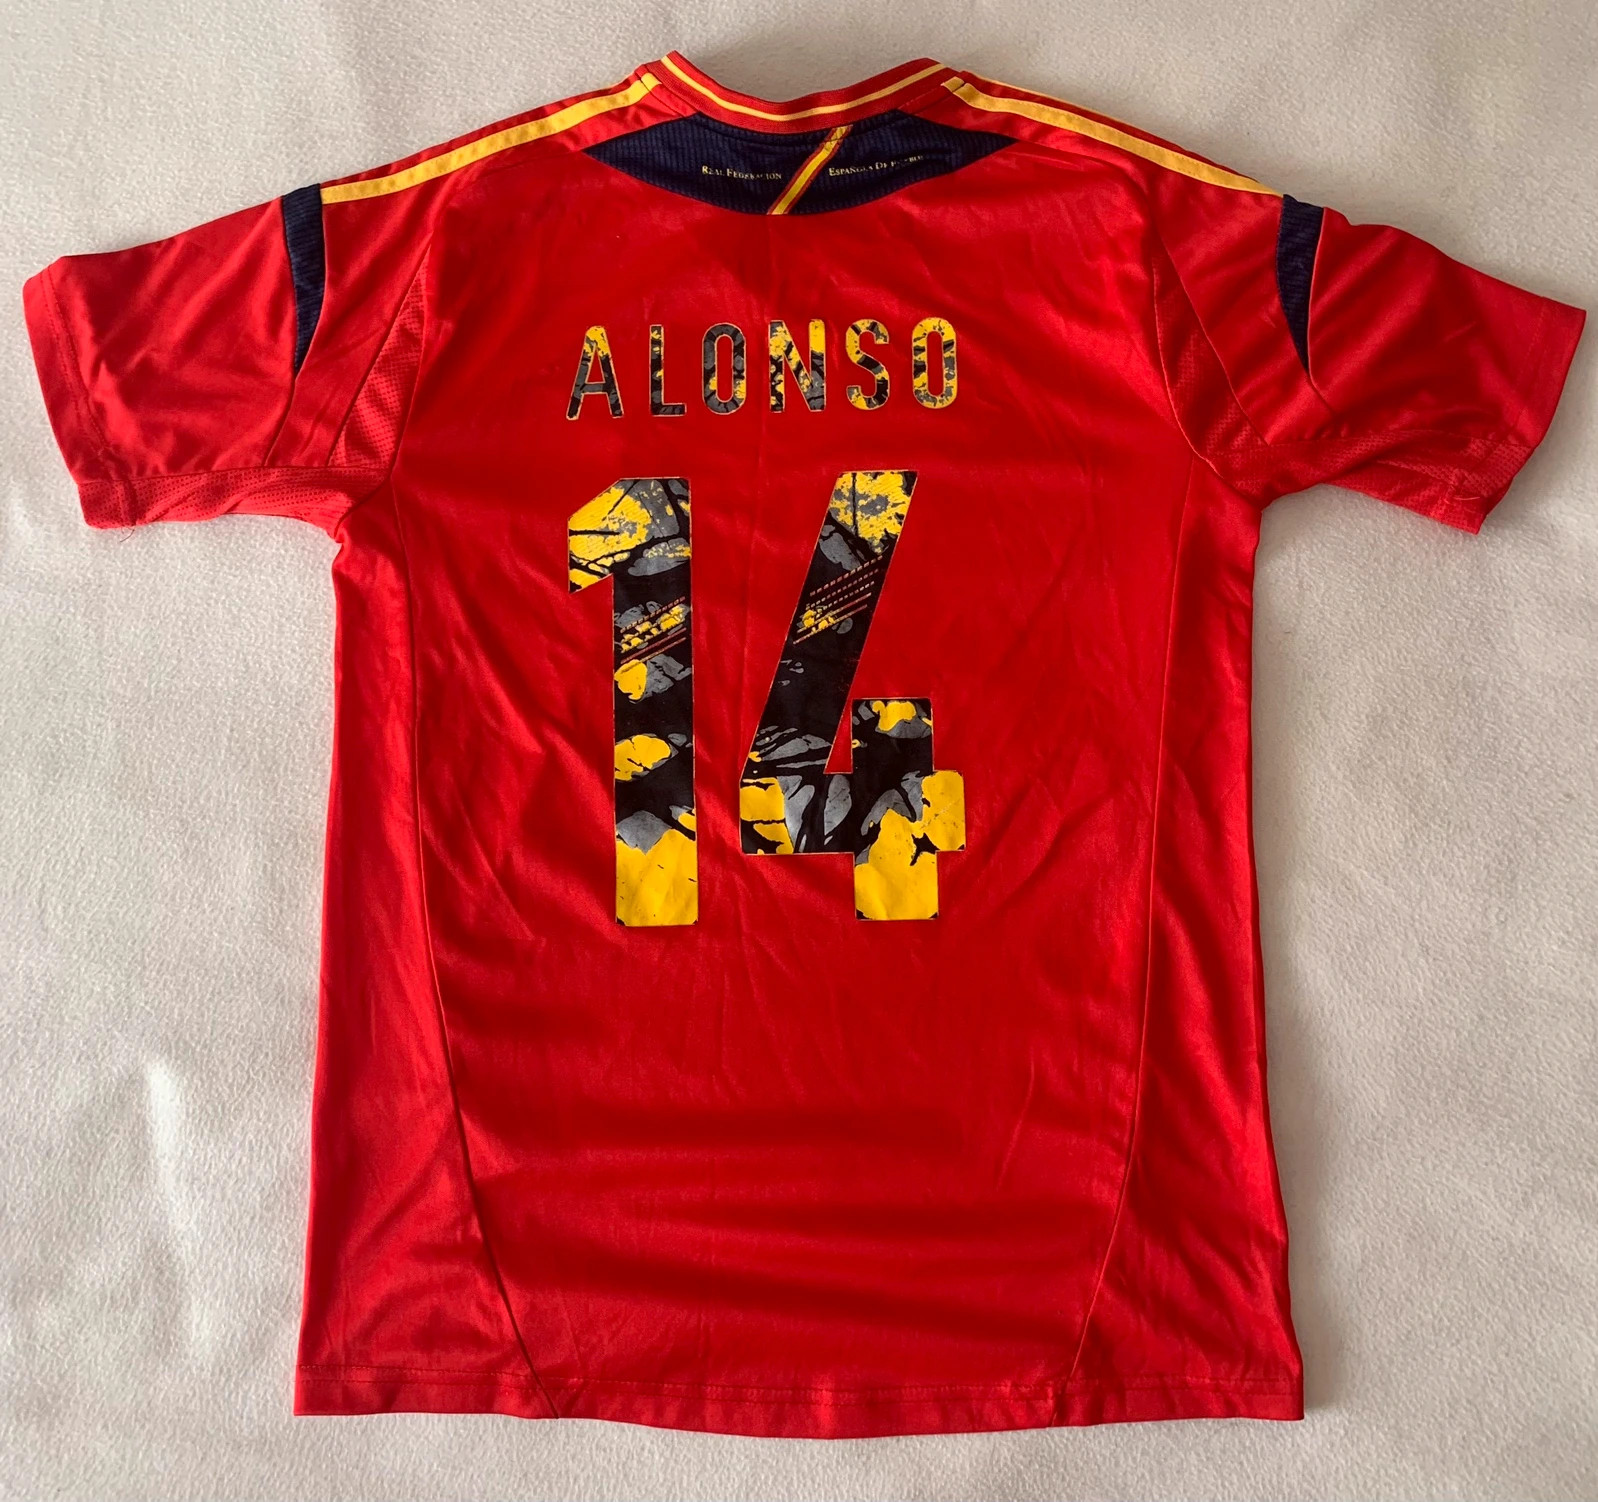 Camisetas de fútbol retro Adidas Originals para lucir esta Eurocopa 2012